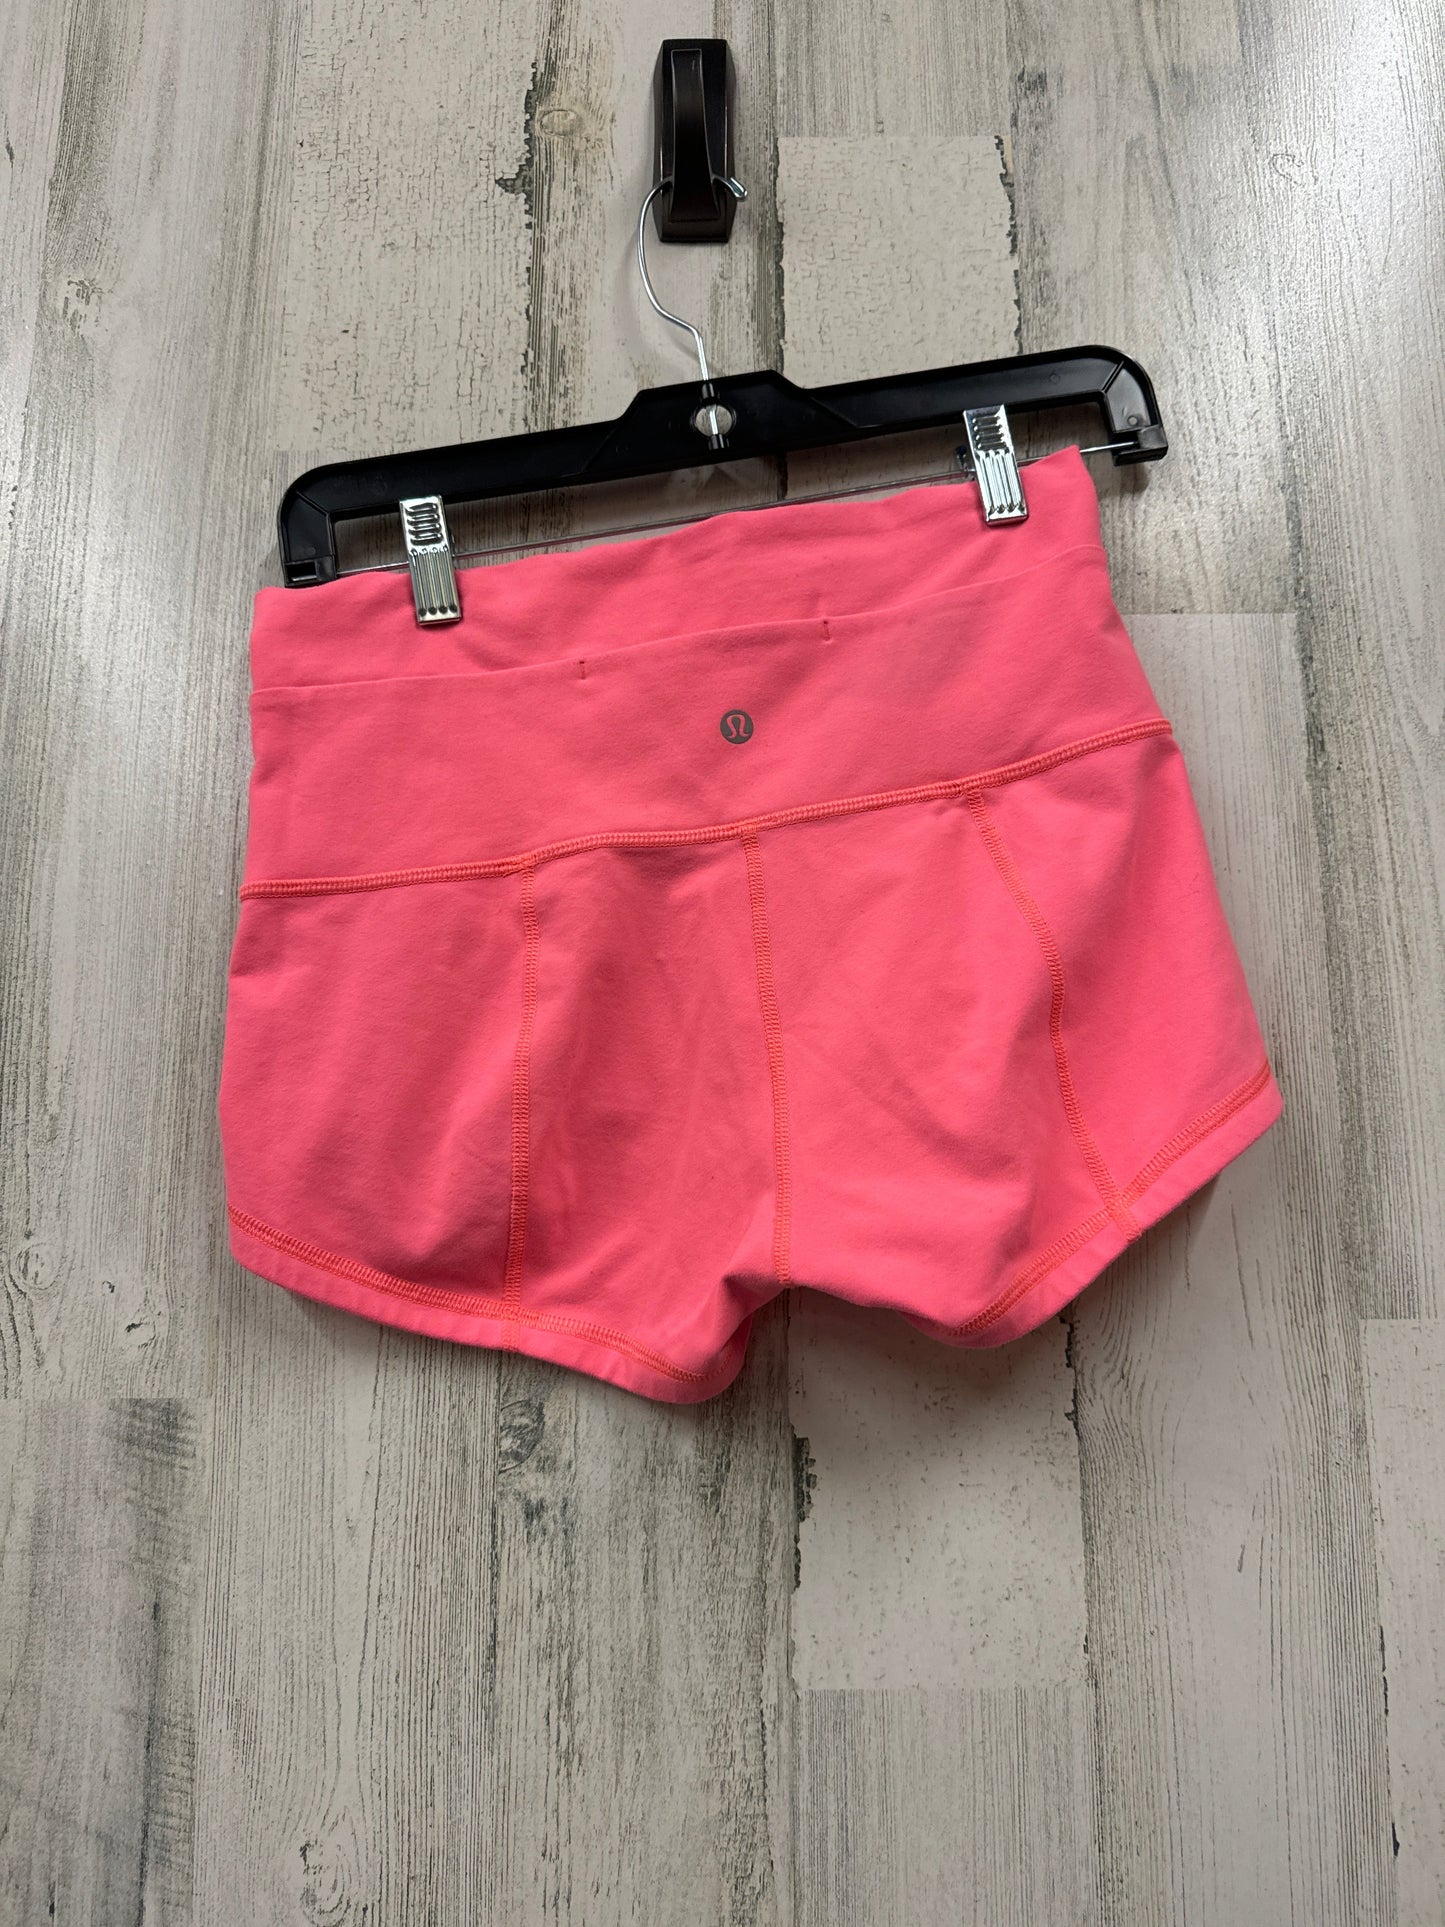 Coral Athletic Shorts Lululemon, Size 8